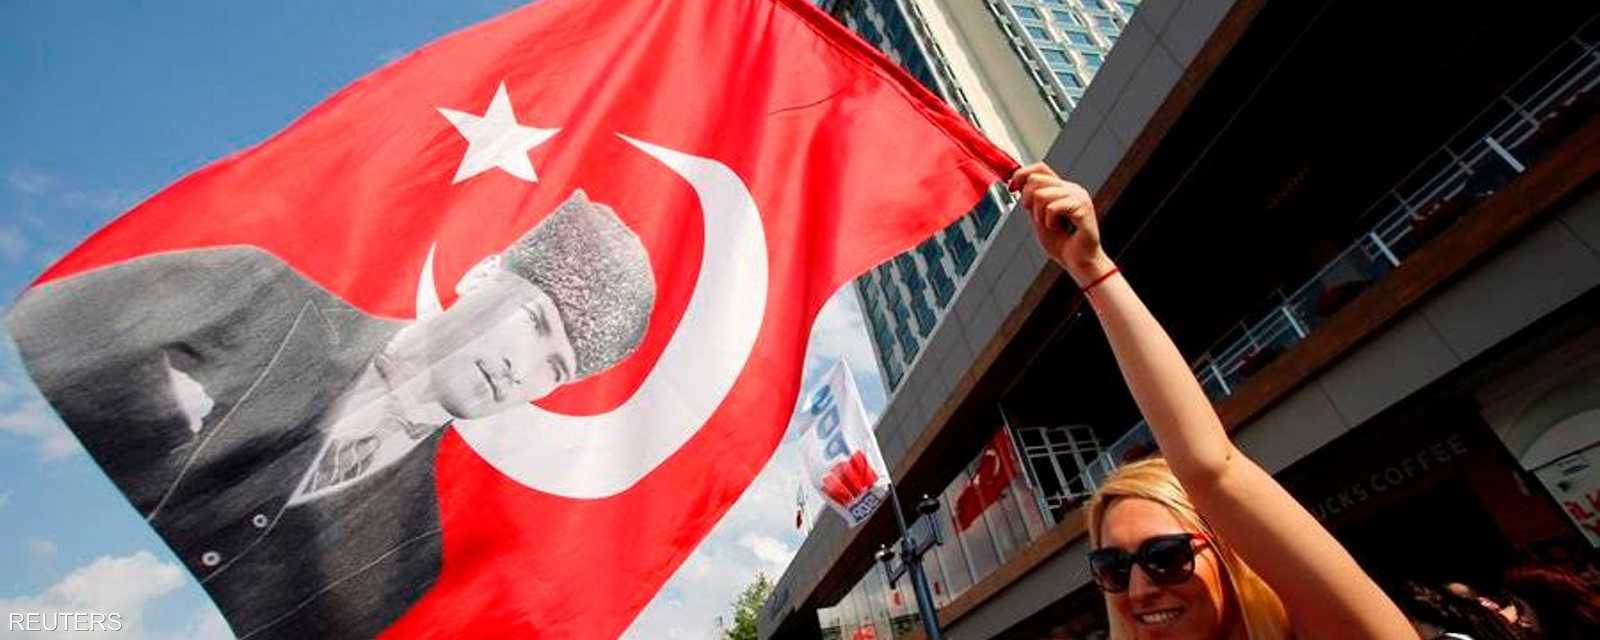 المتظاهرون برفعهم صور أبو الأتراك (أتاتورك) يعبرون عن تمسكهم بالعلمانية التي أرساها الأخير بعد انهيار السلطنة العثمانية.